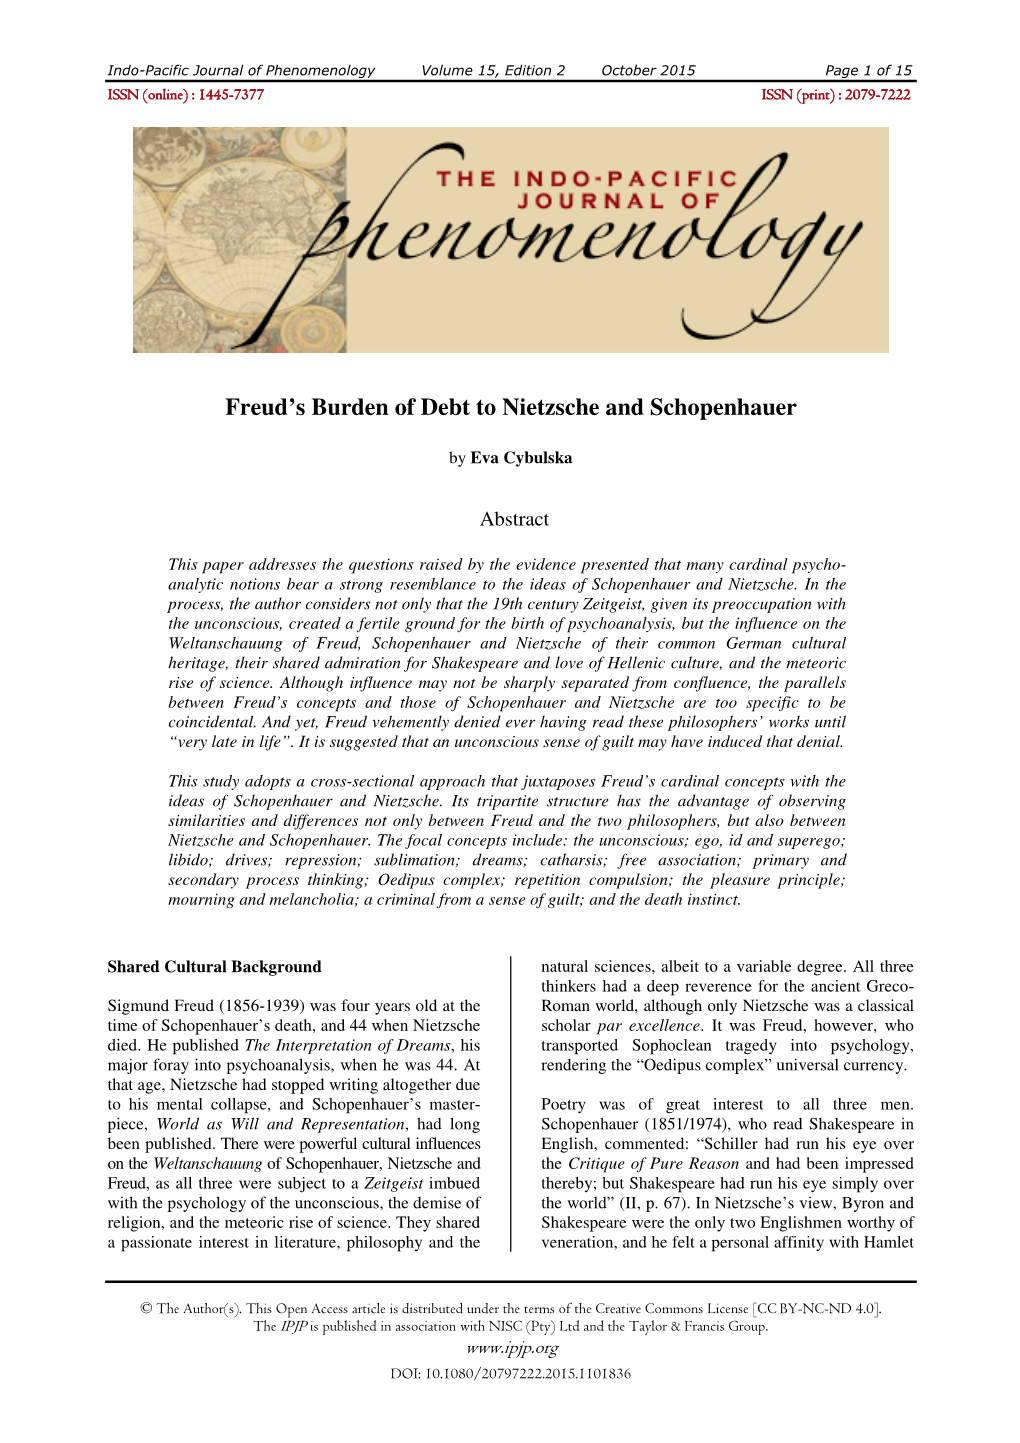 Freud's Burden of Debt to Nietzsche and Schopenhauer